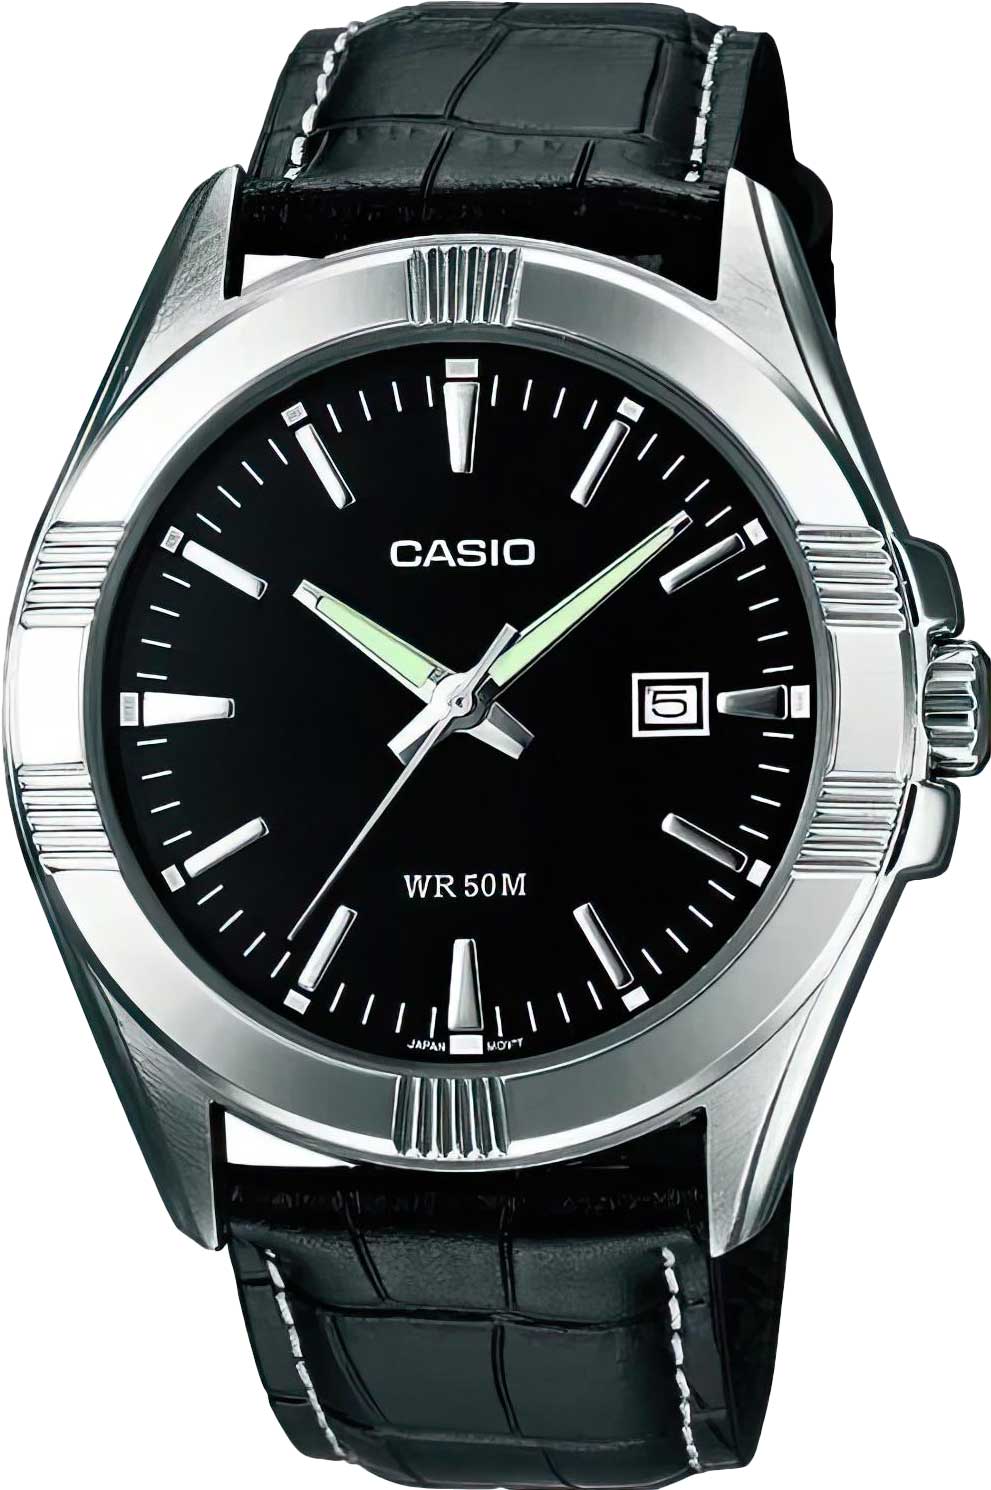 Наручные часы Casio MTP-1308L-1A наручные часы casio edifice ef 527d 1a